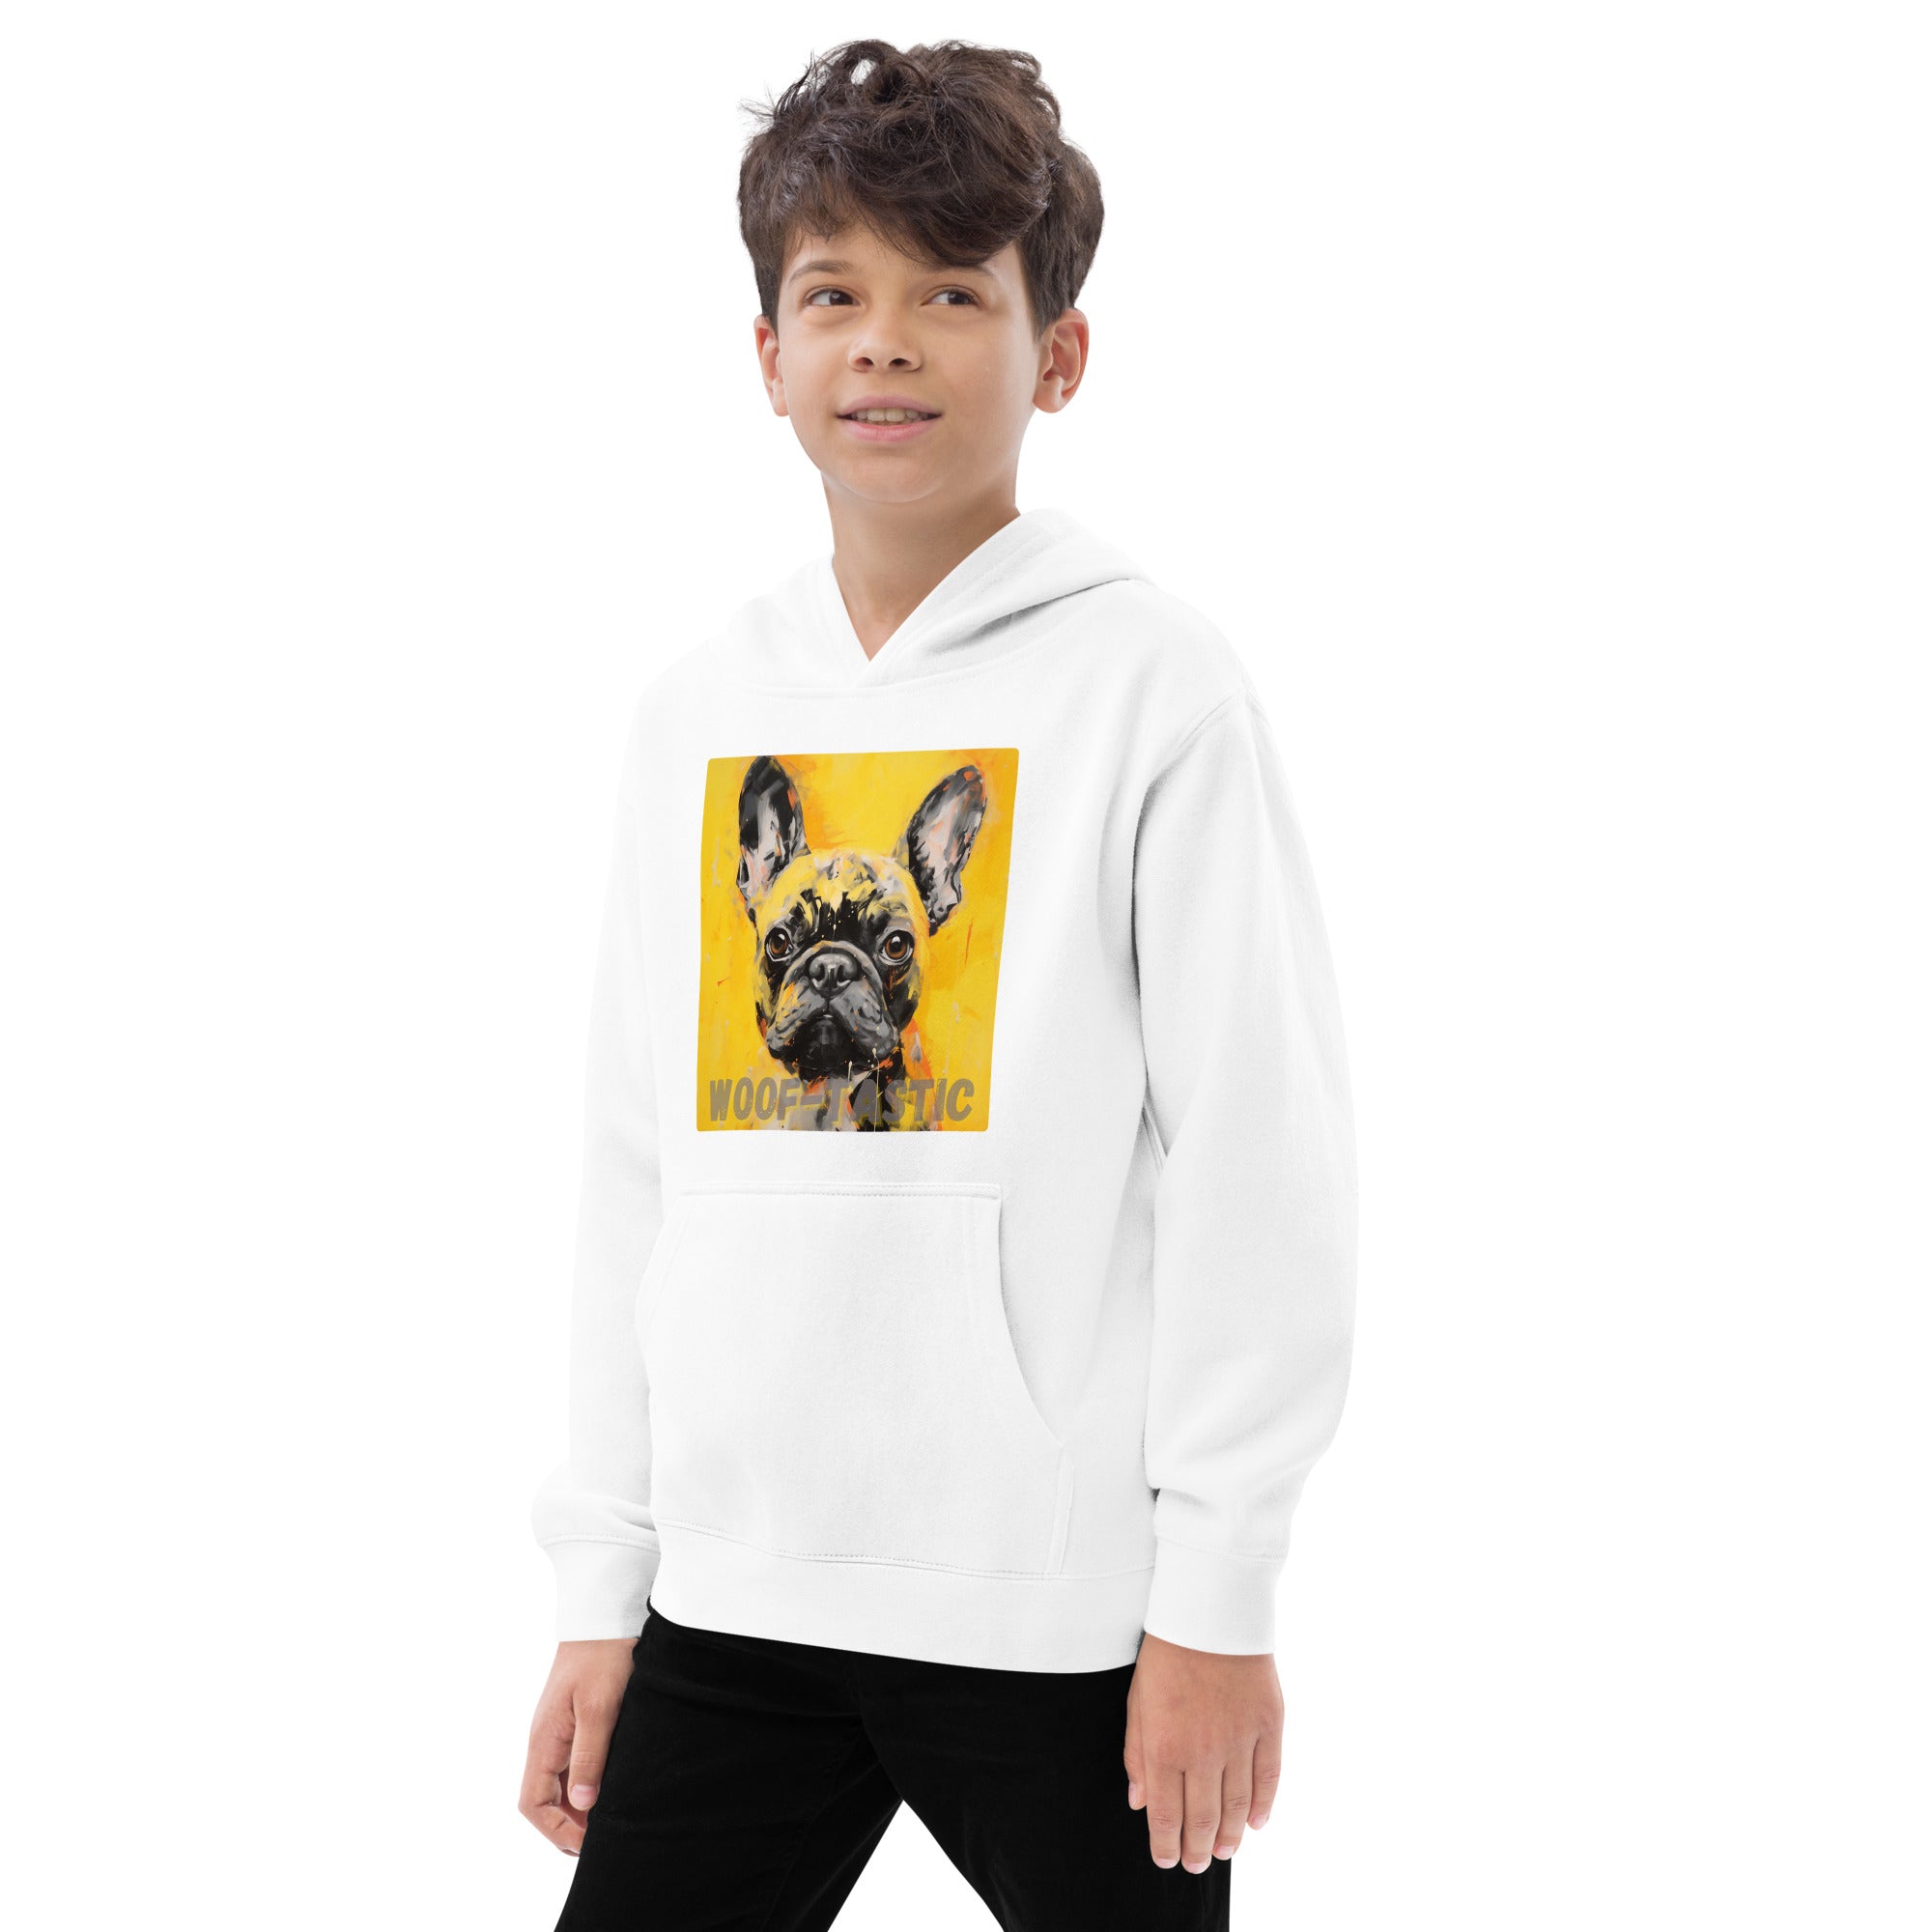 Kids fleece hoodie Woof-tastic French Bulldog